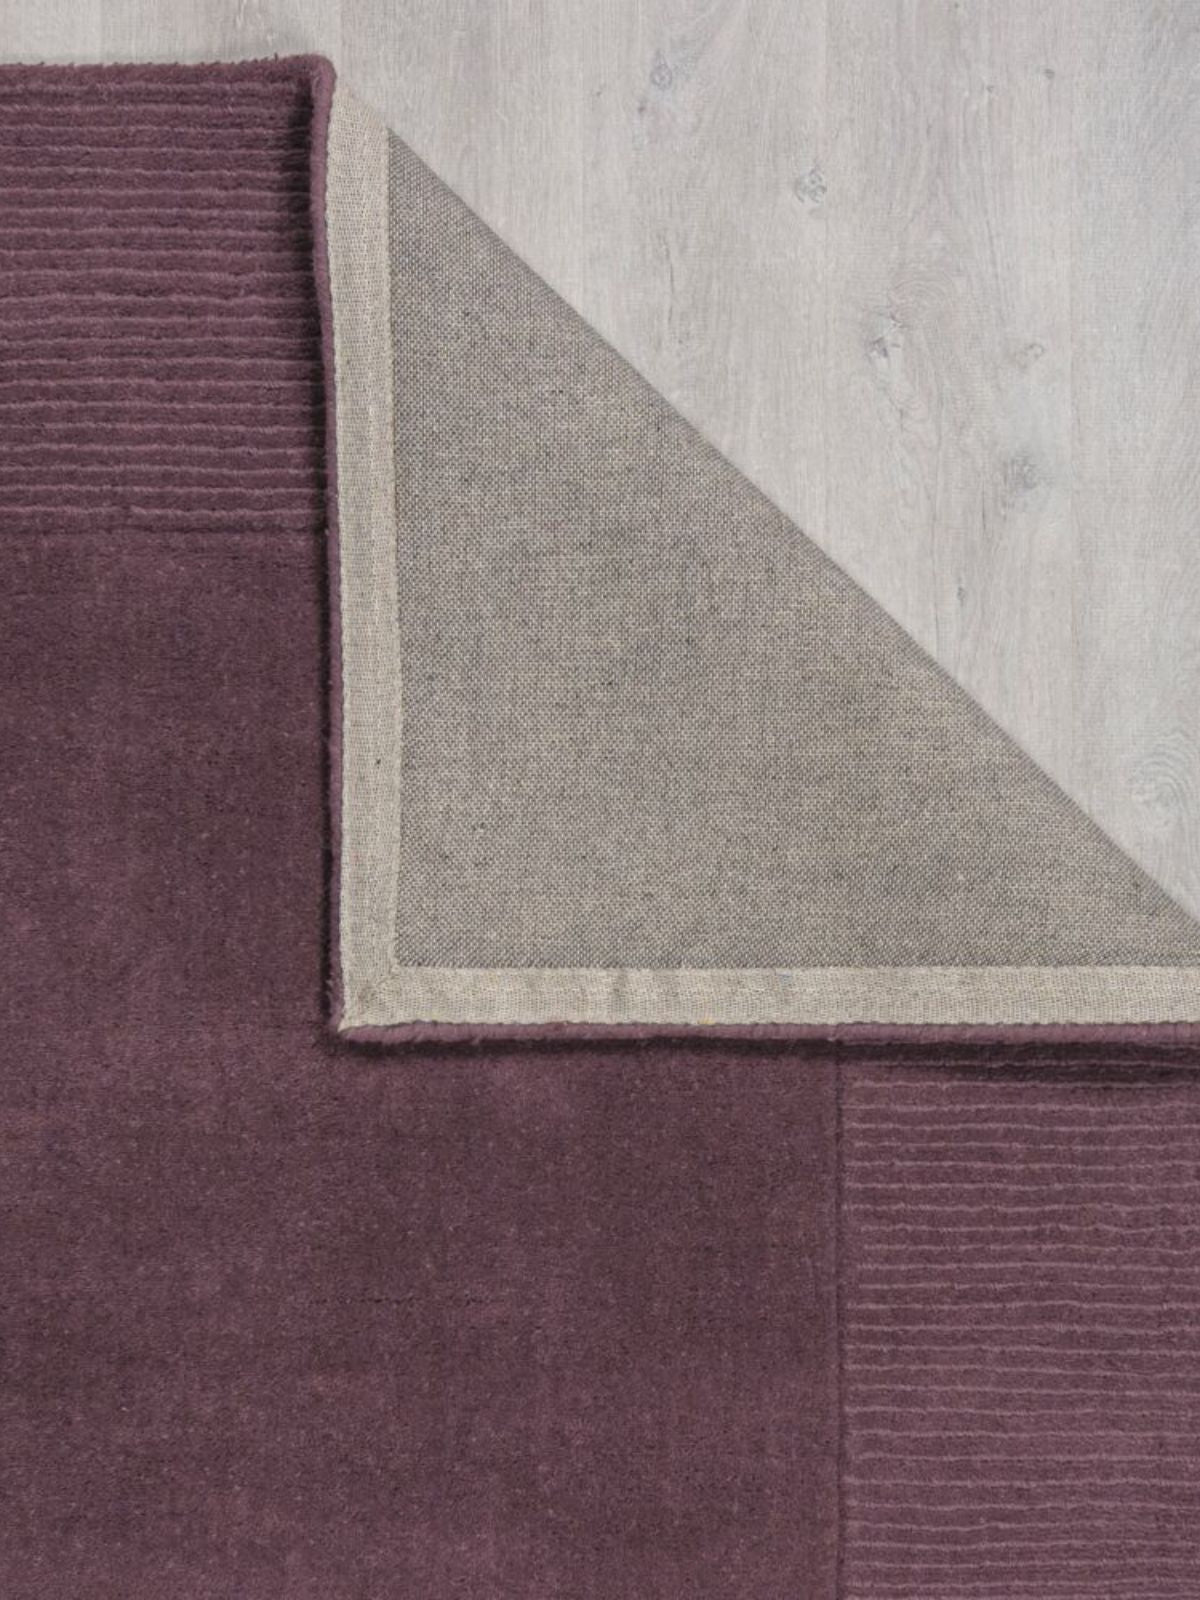 Tappeto di design Textured Wool Border in lana, colore viola-3